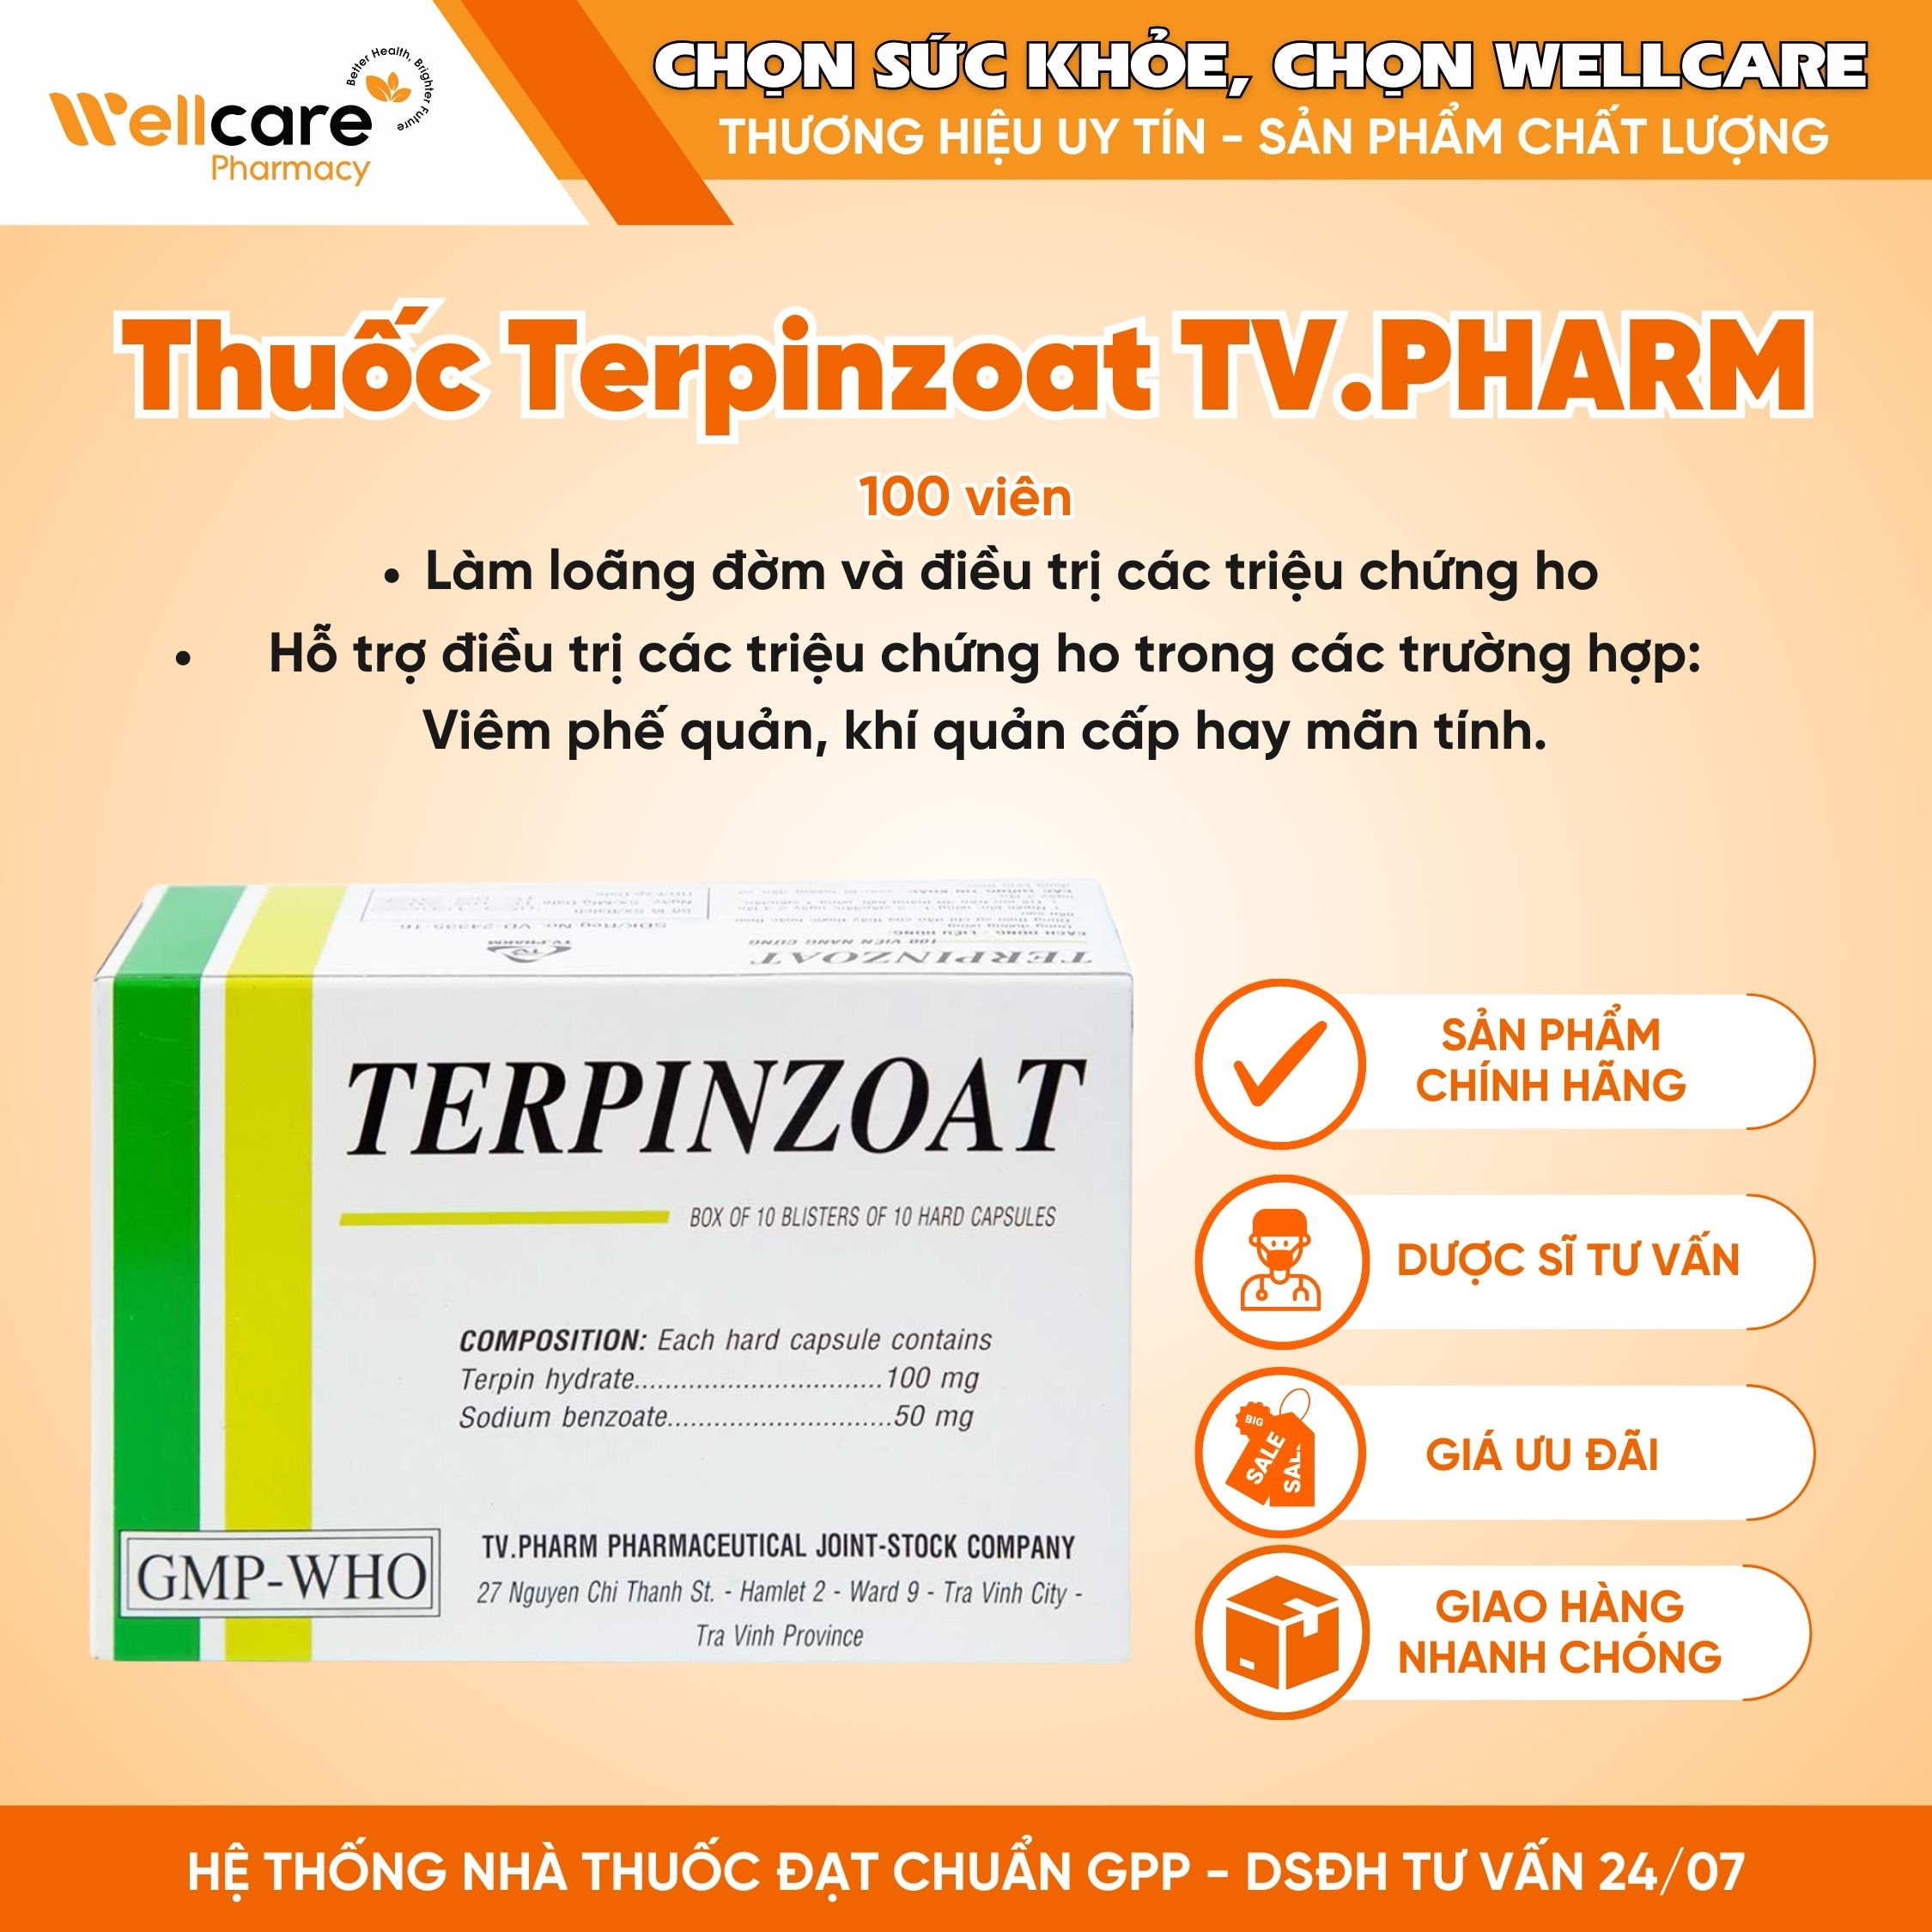 Thuốc Terpinzoat TV.PHARM – Làm loãng đờm và hỗ trợ điều trị các triệu chứng ho (Hộp 10 vỉ x 10 viên)